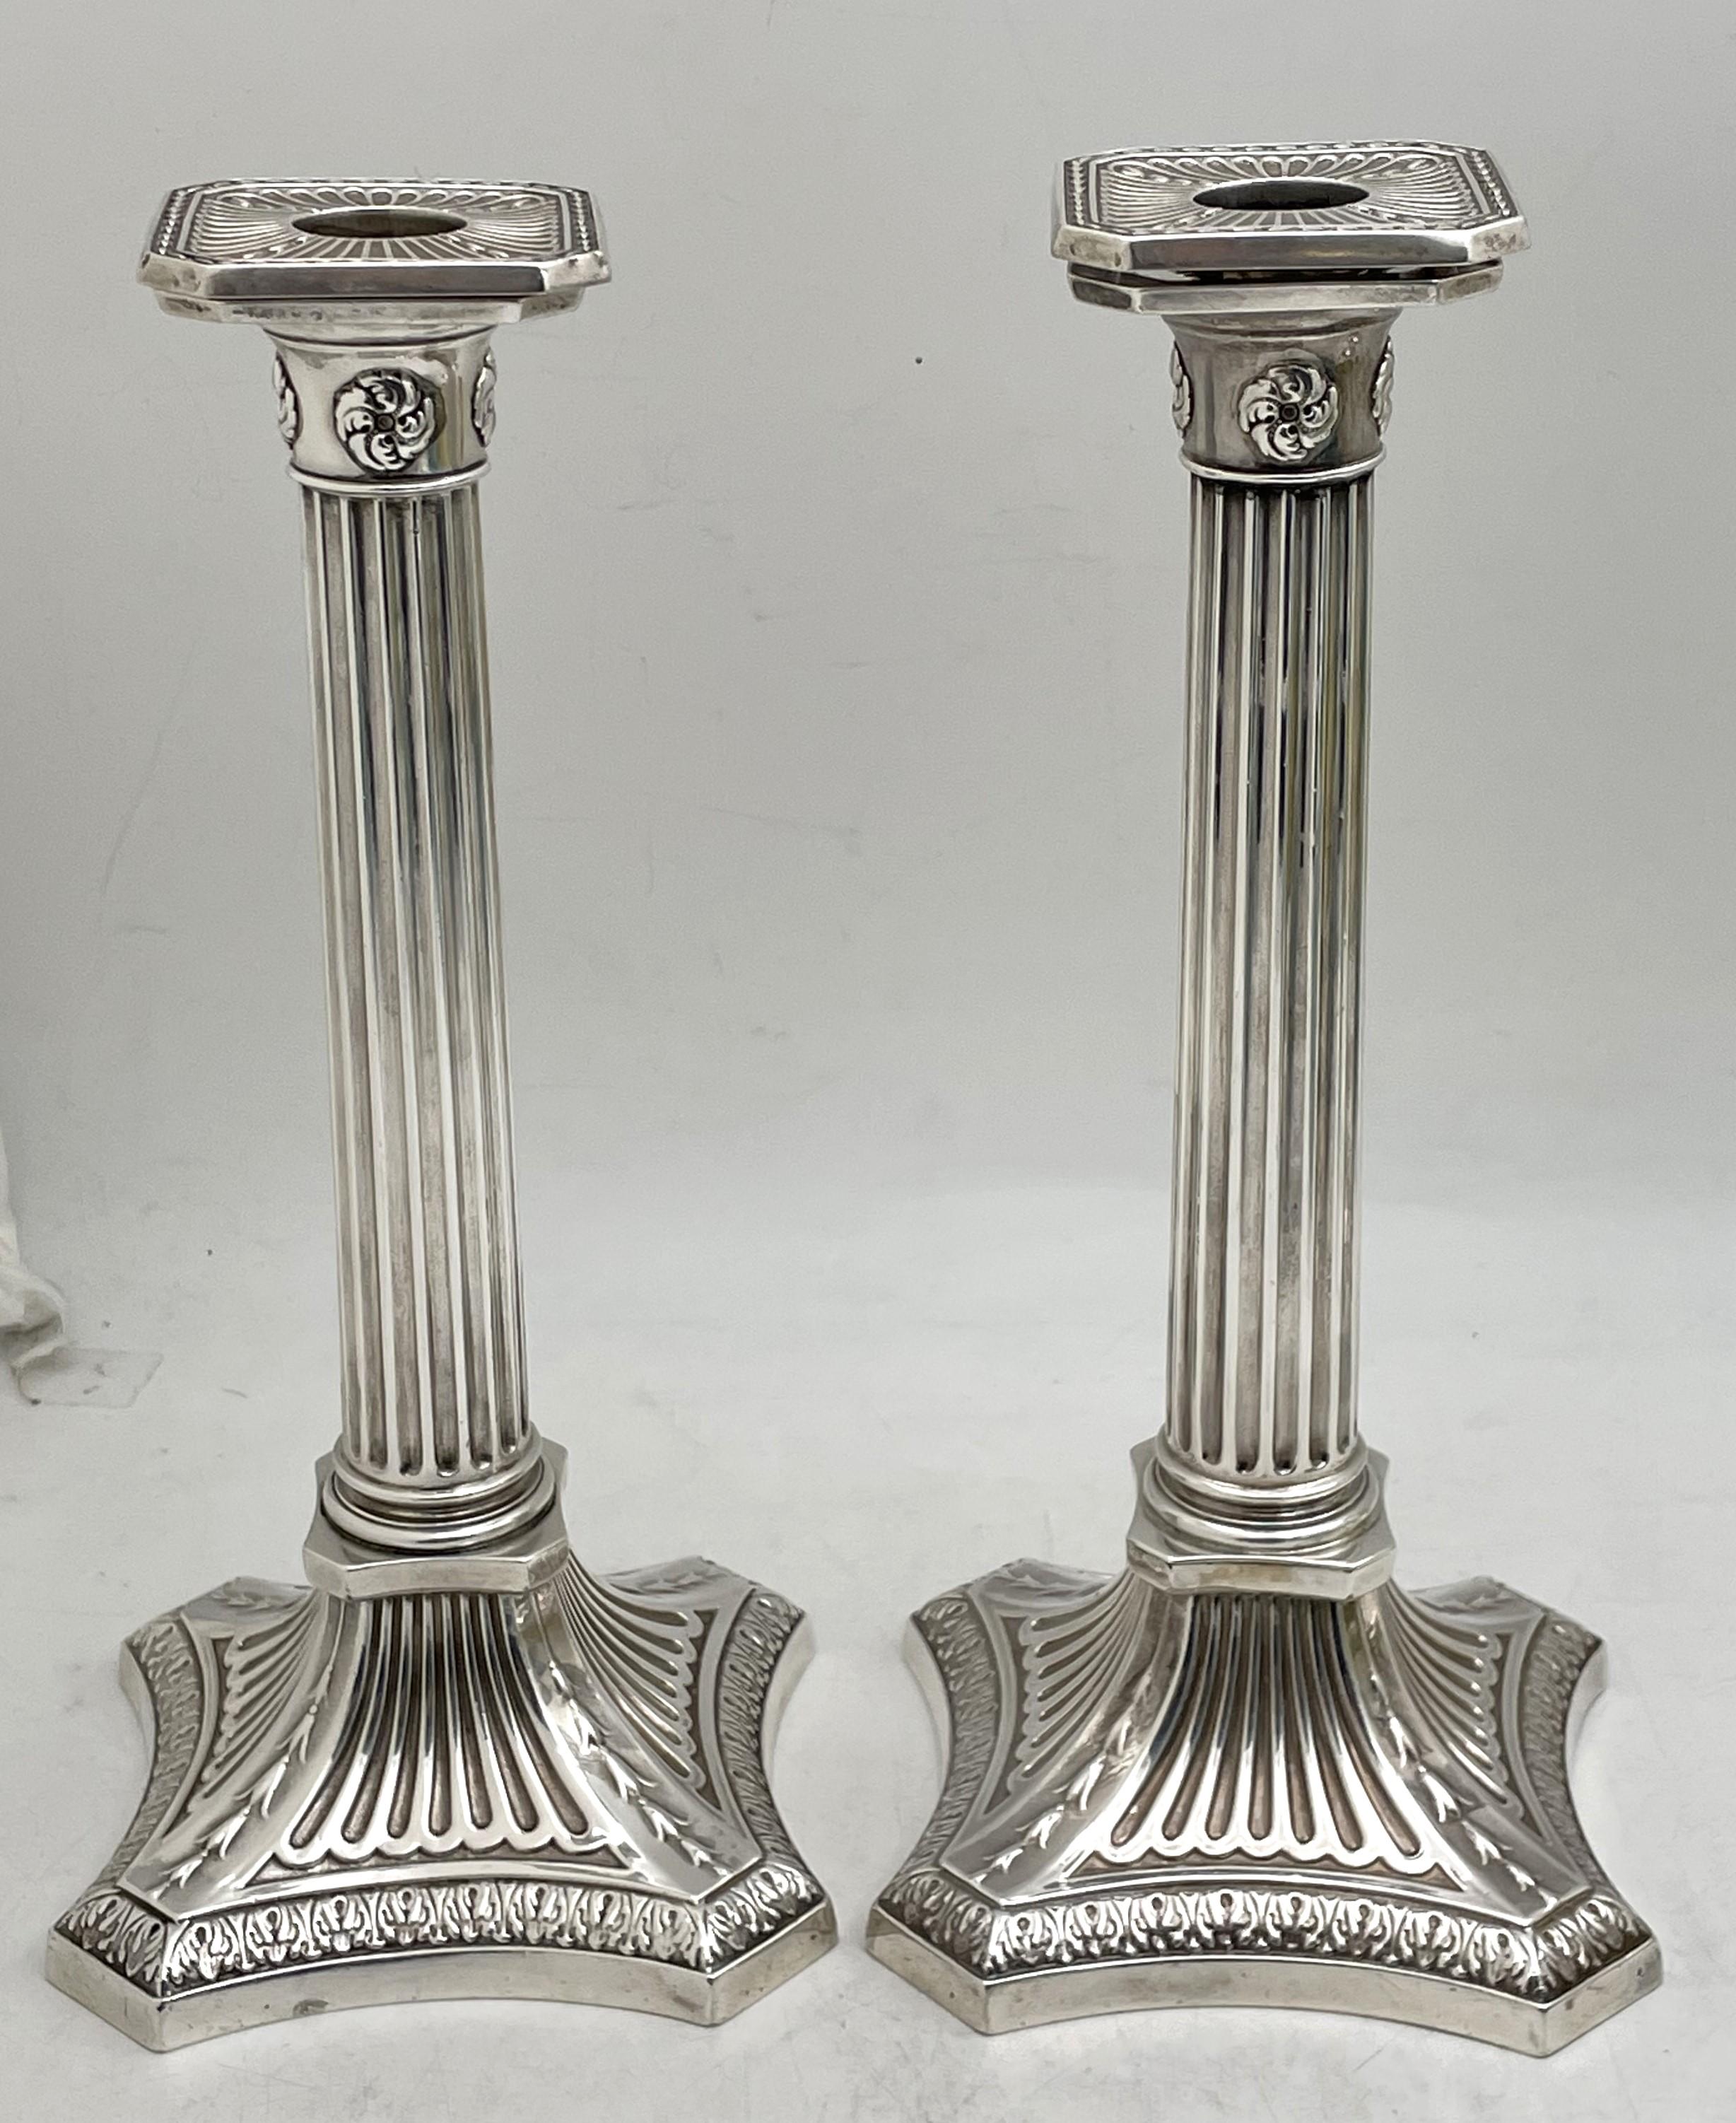 Gorham Paar Kerzenhalter aus Sterlingsilber von 1894, in Form korinthischer Säulen, mit elegantem Design und abnehmbaren Bügeln. Sie messen 10 1/4'' in der Höhe und 4 1/2'' in der Tiefe an der Basis, sind gewichtet und tragen Punzen wie abgebildet.